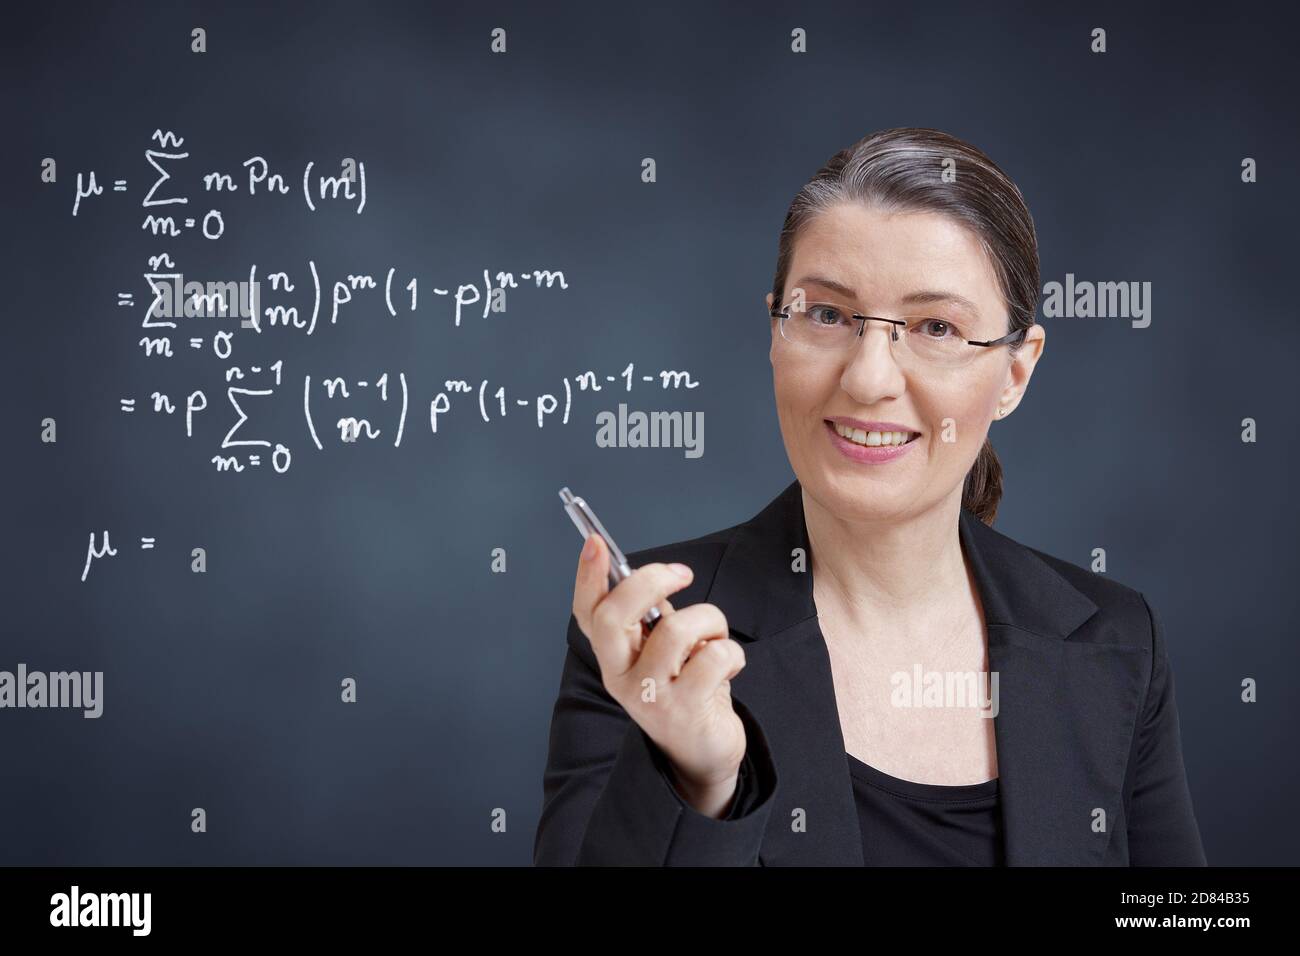 Concepto de aprendizaje remoto: Profesor de matemáticas amigable, profesor, tutor o entrenador personal frente a la pizarra. Foto de stock